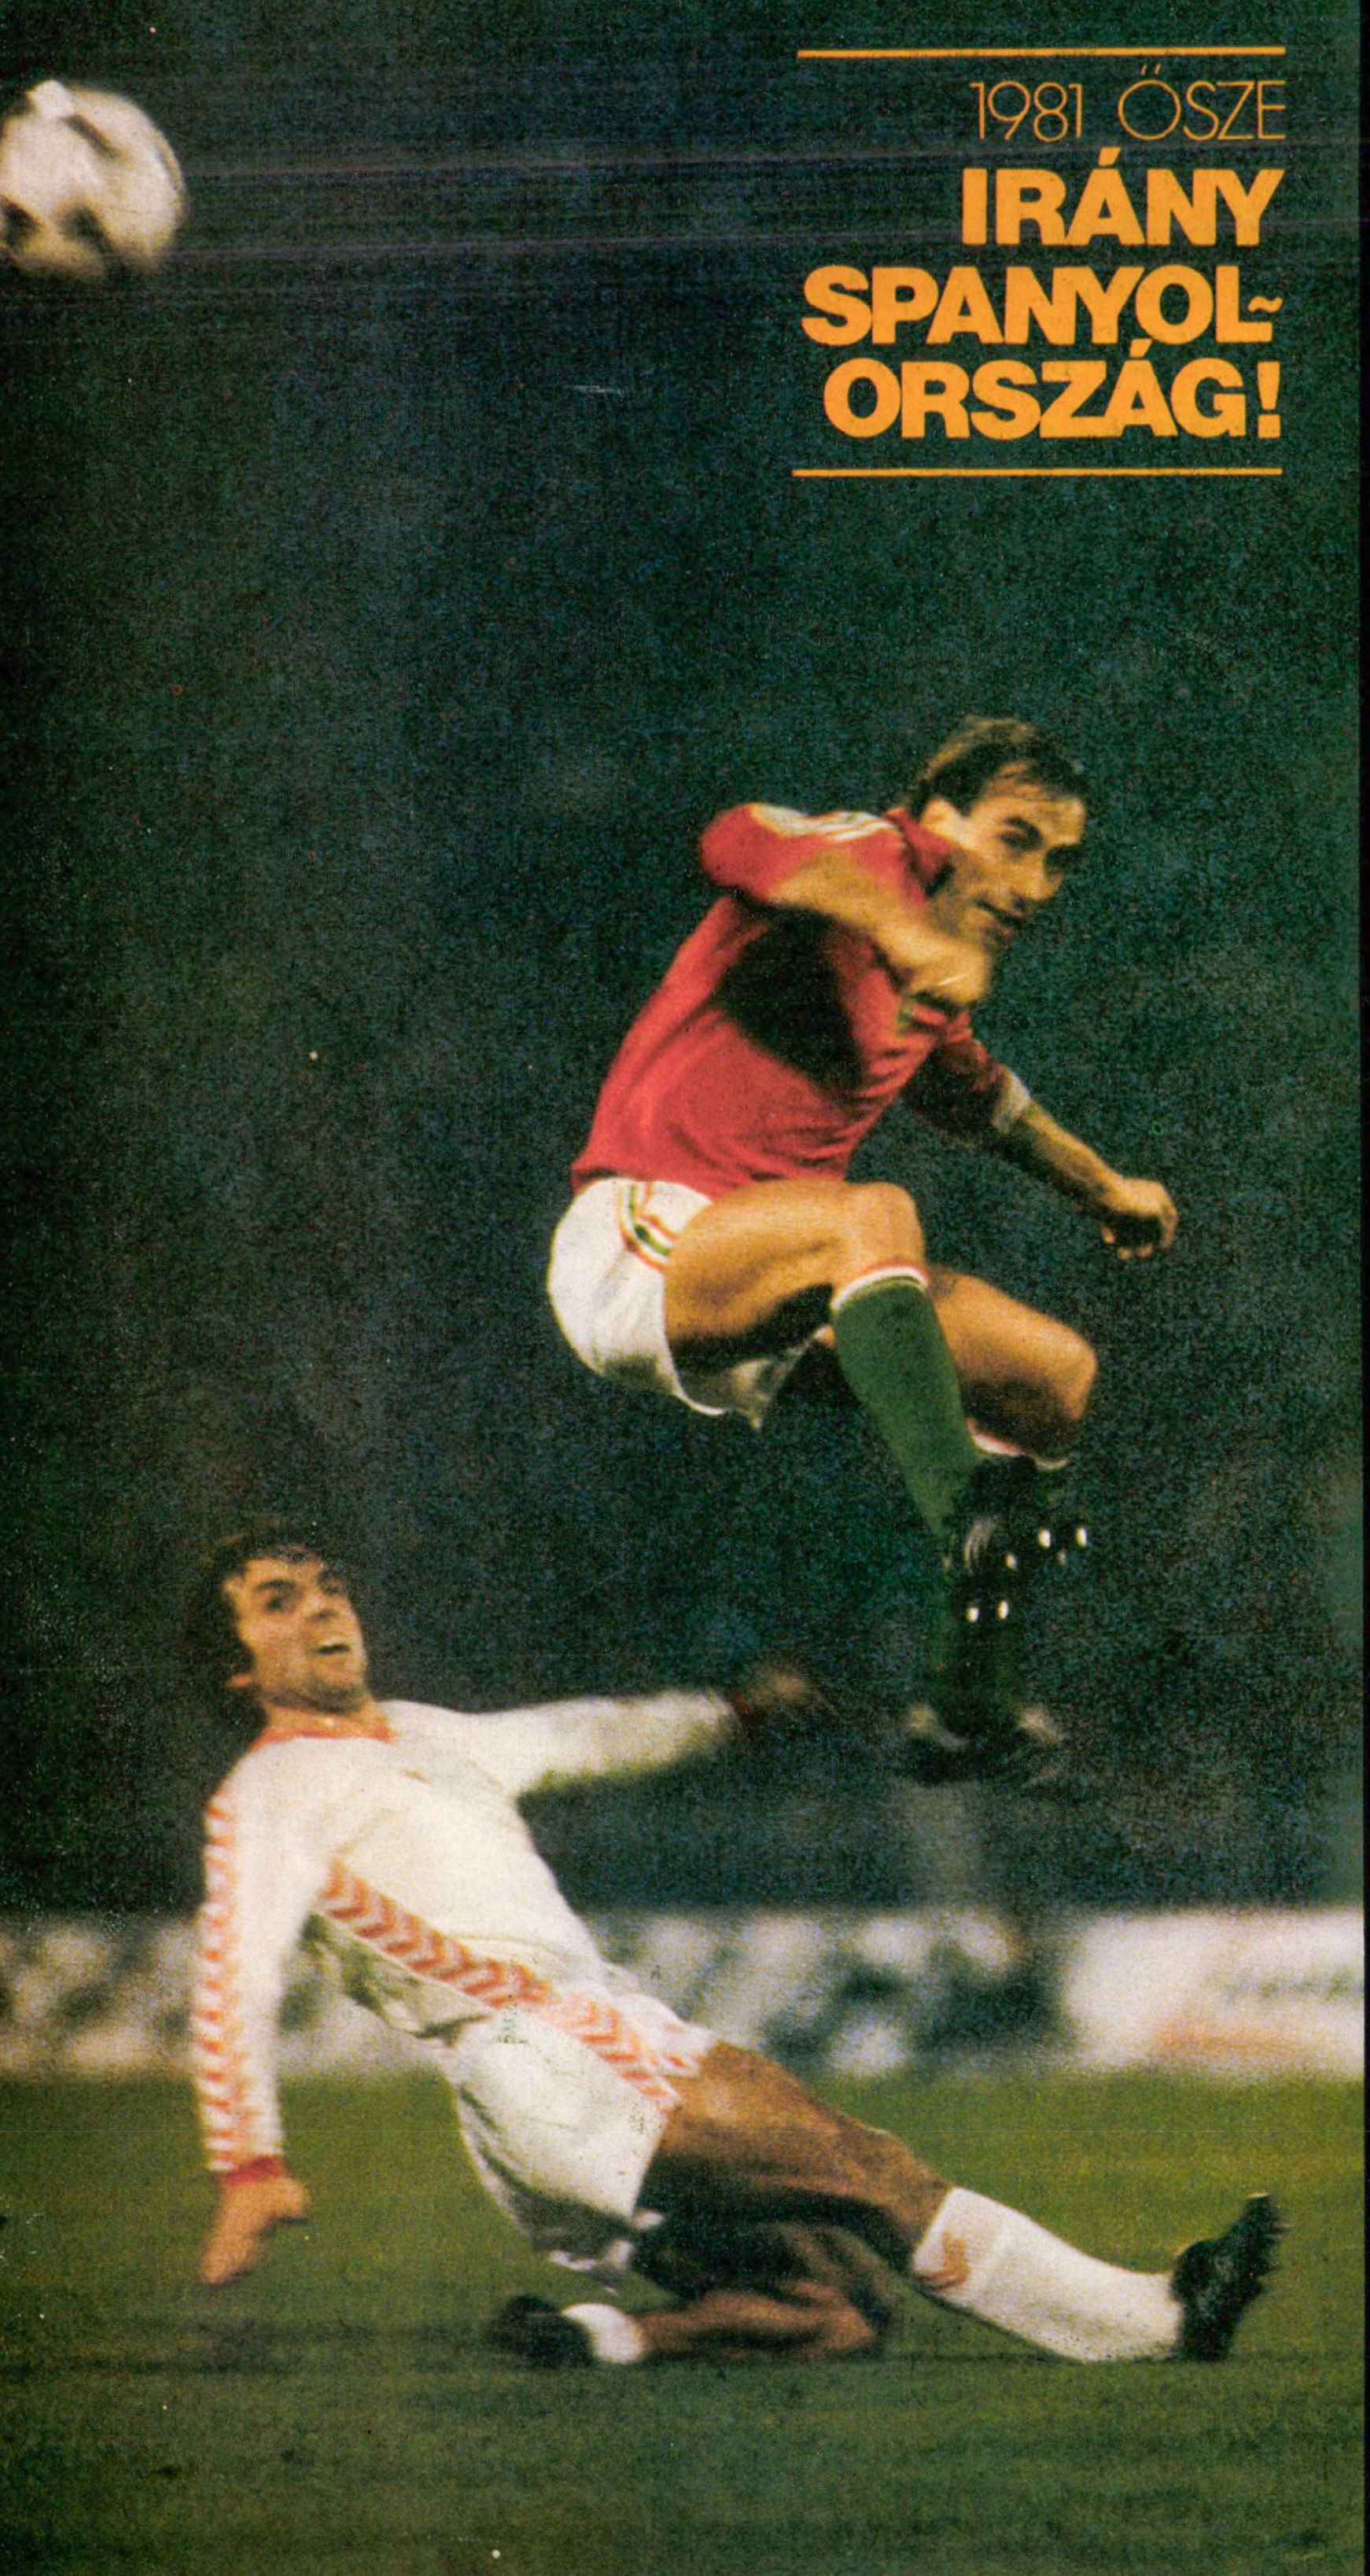 Müller megjárta az 1982-es vb-t is a válogatottal /Fotó: Arcanum Képes Sport